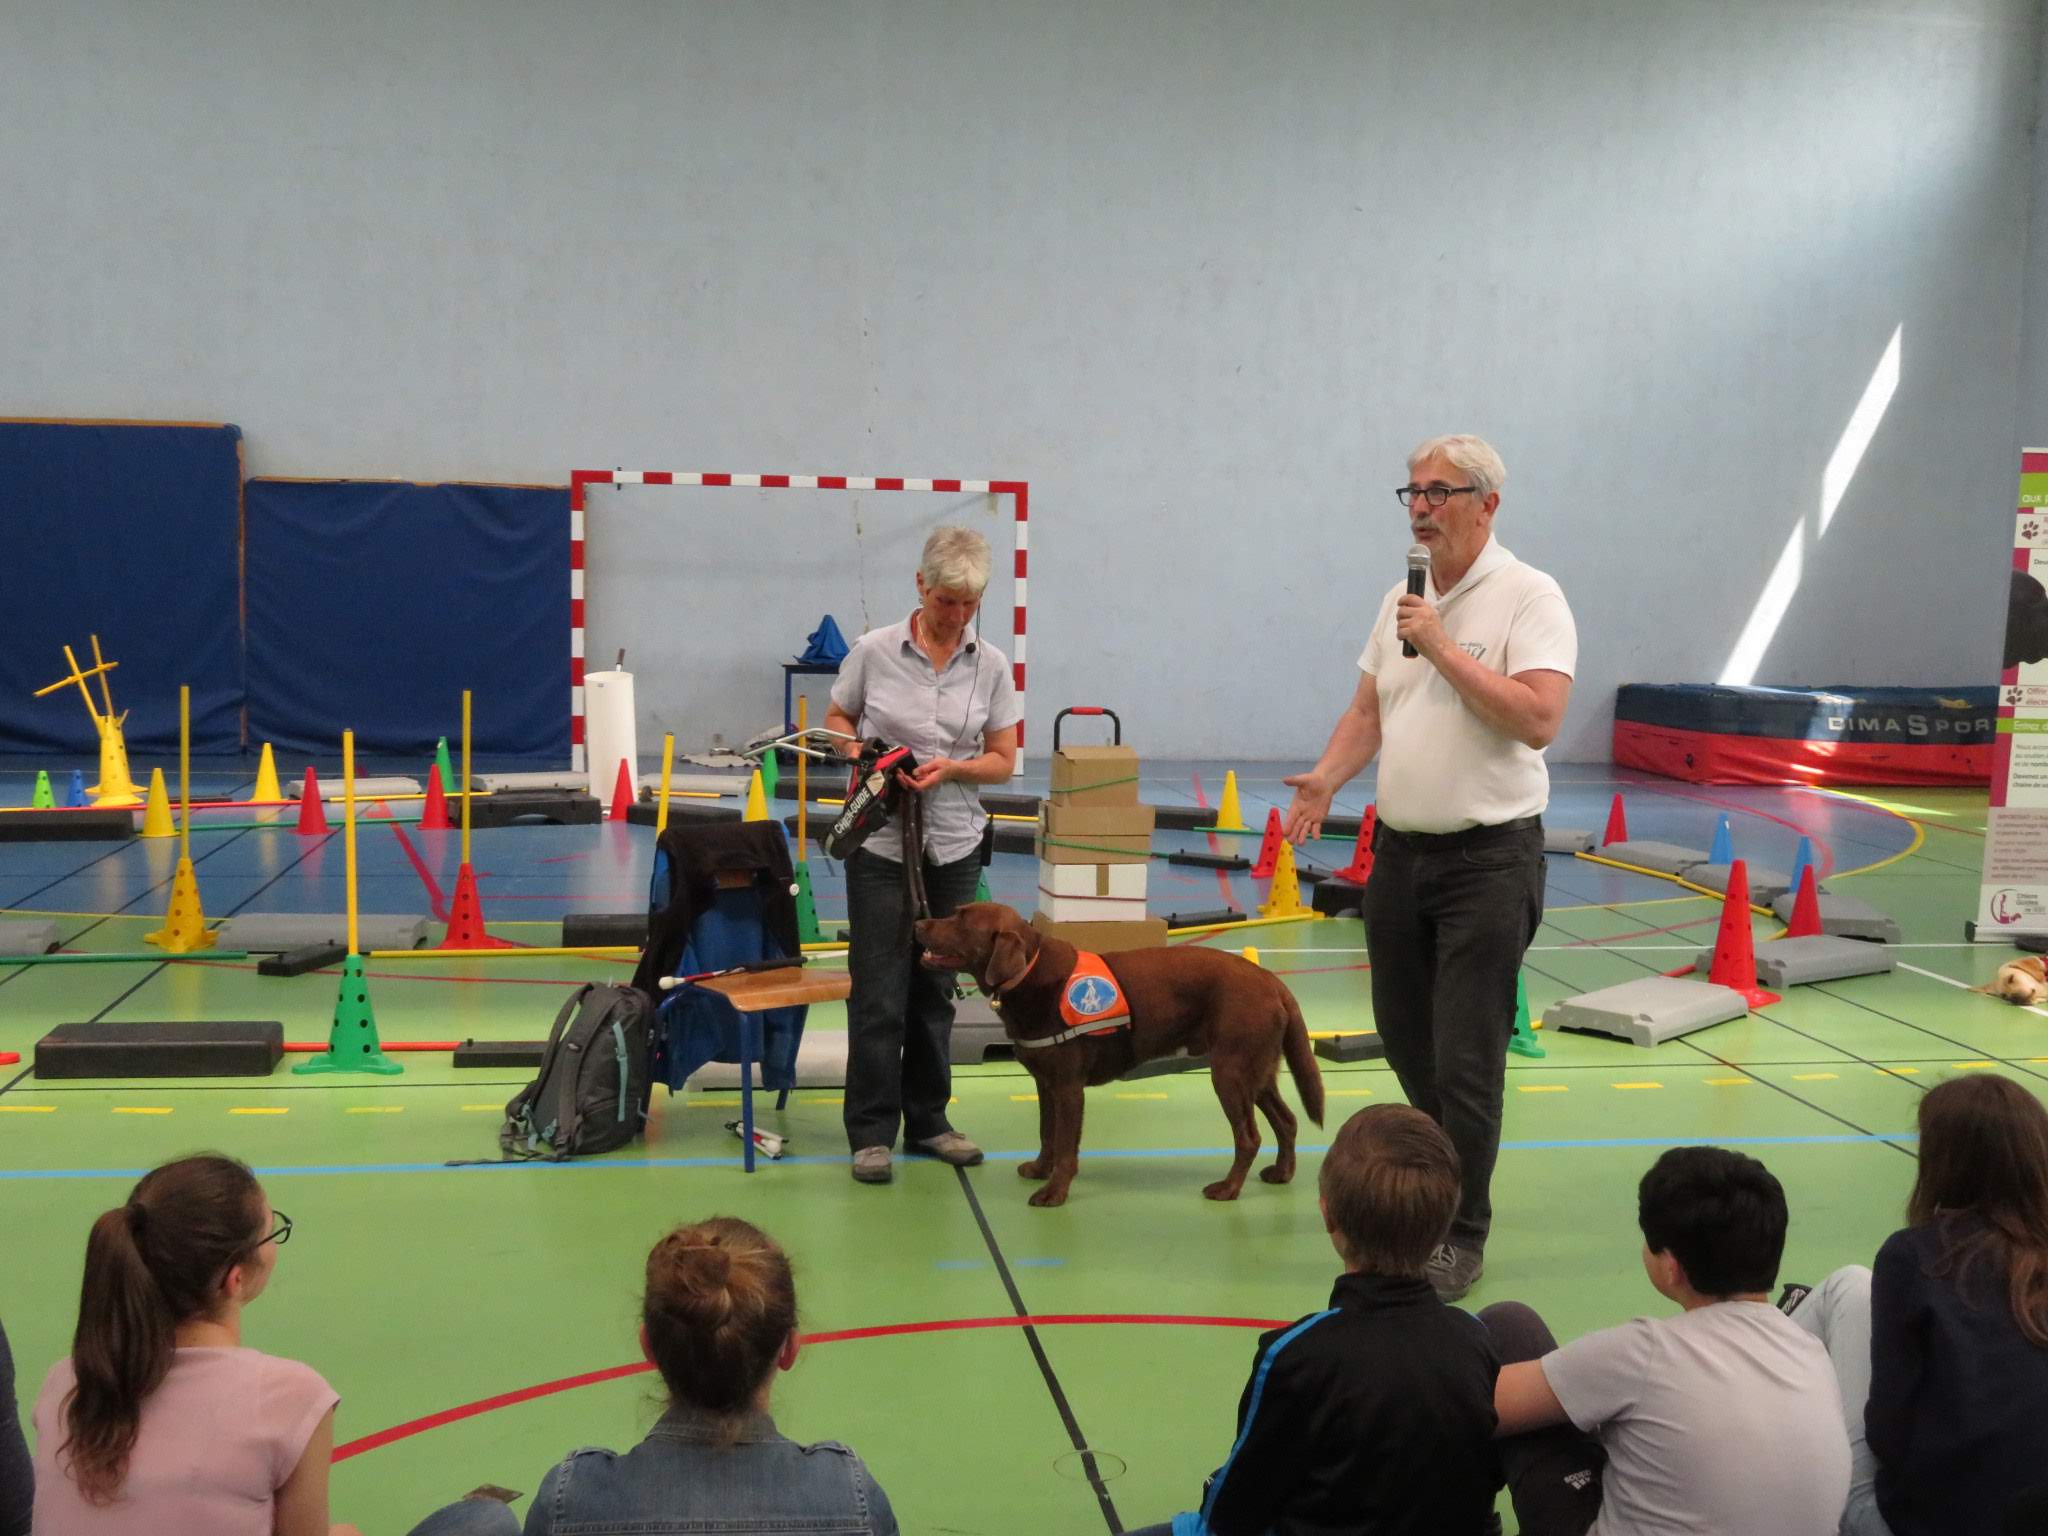 Présentation sur chien guide à des enfants dans un gymnase